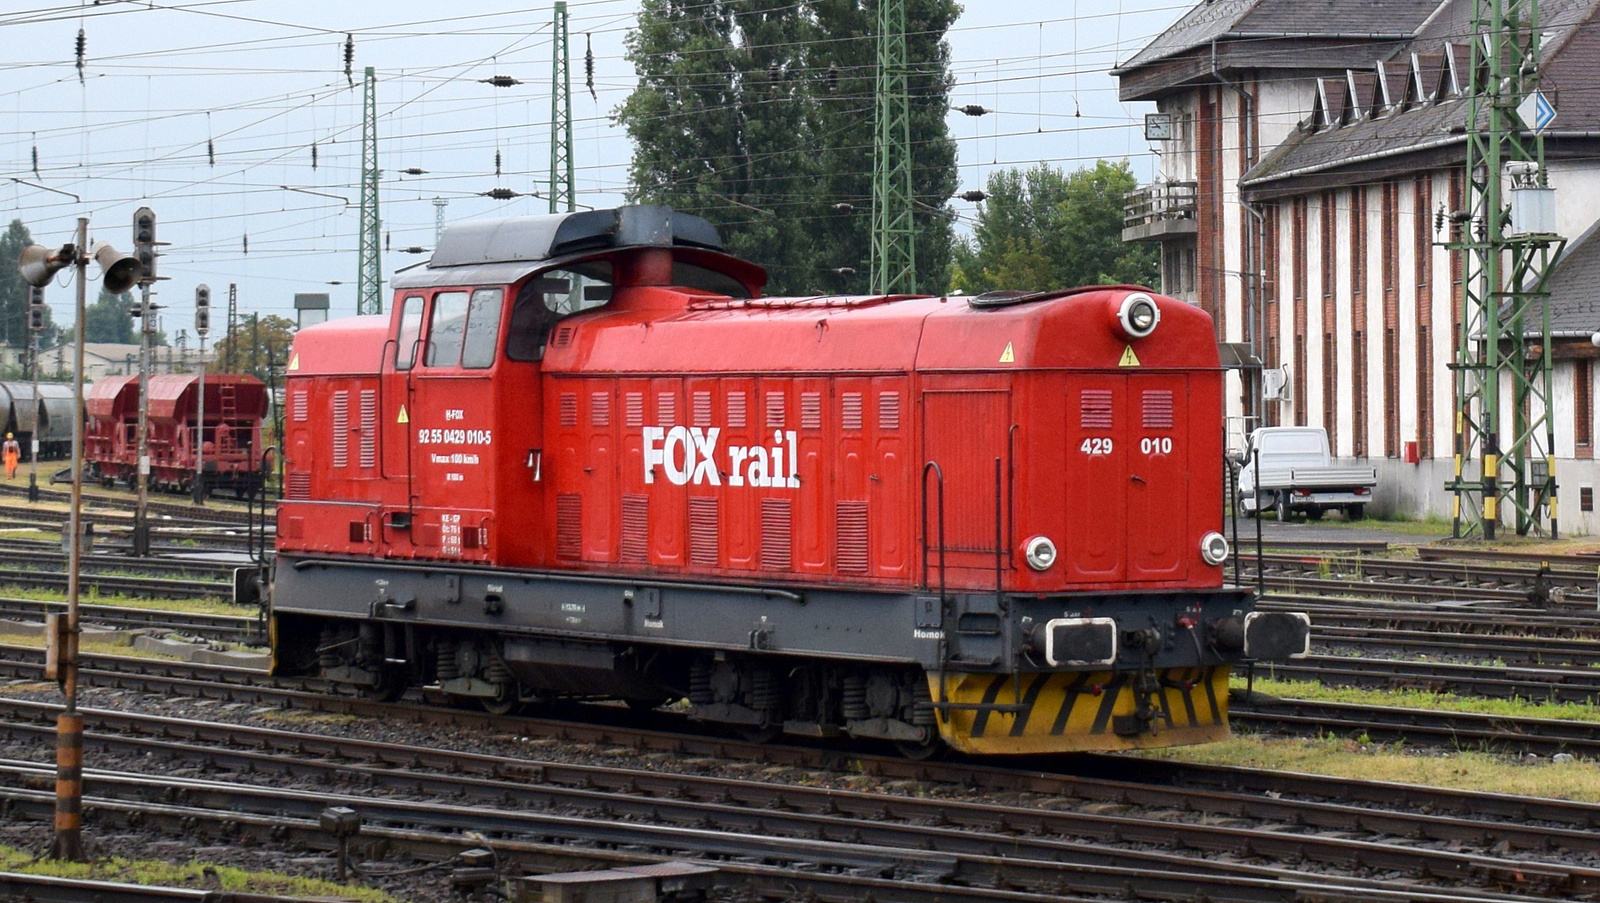 429 010 (Foxrail)